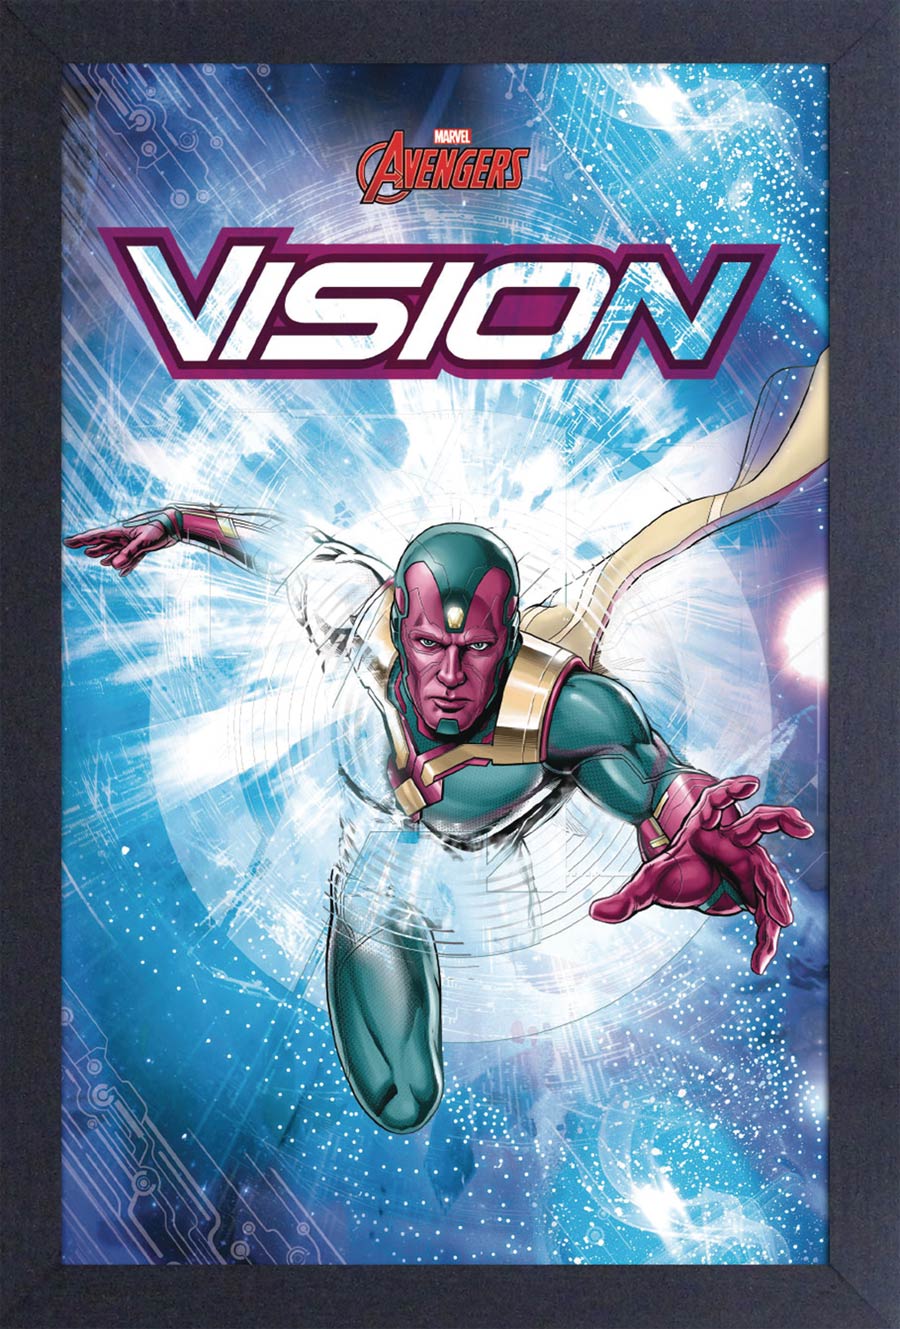 Marvel 11x17 Framed Print - Vision